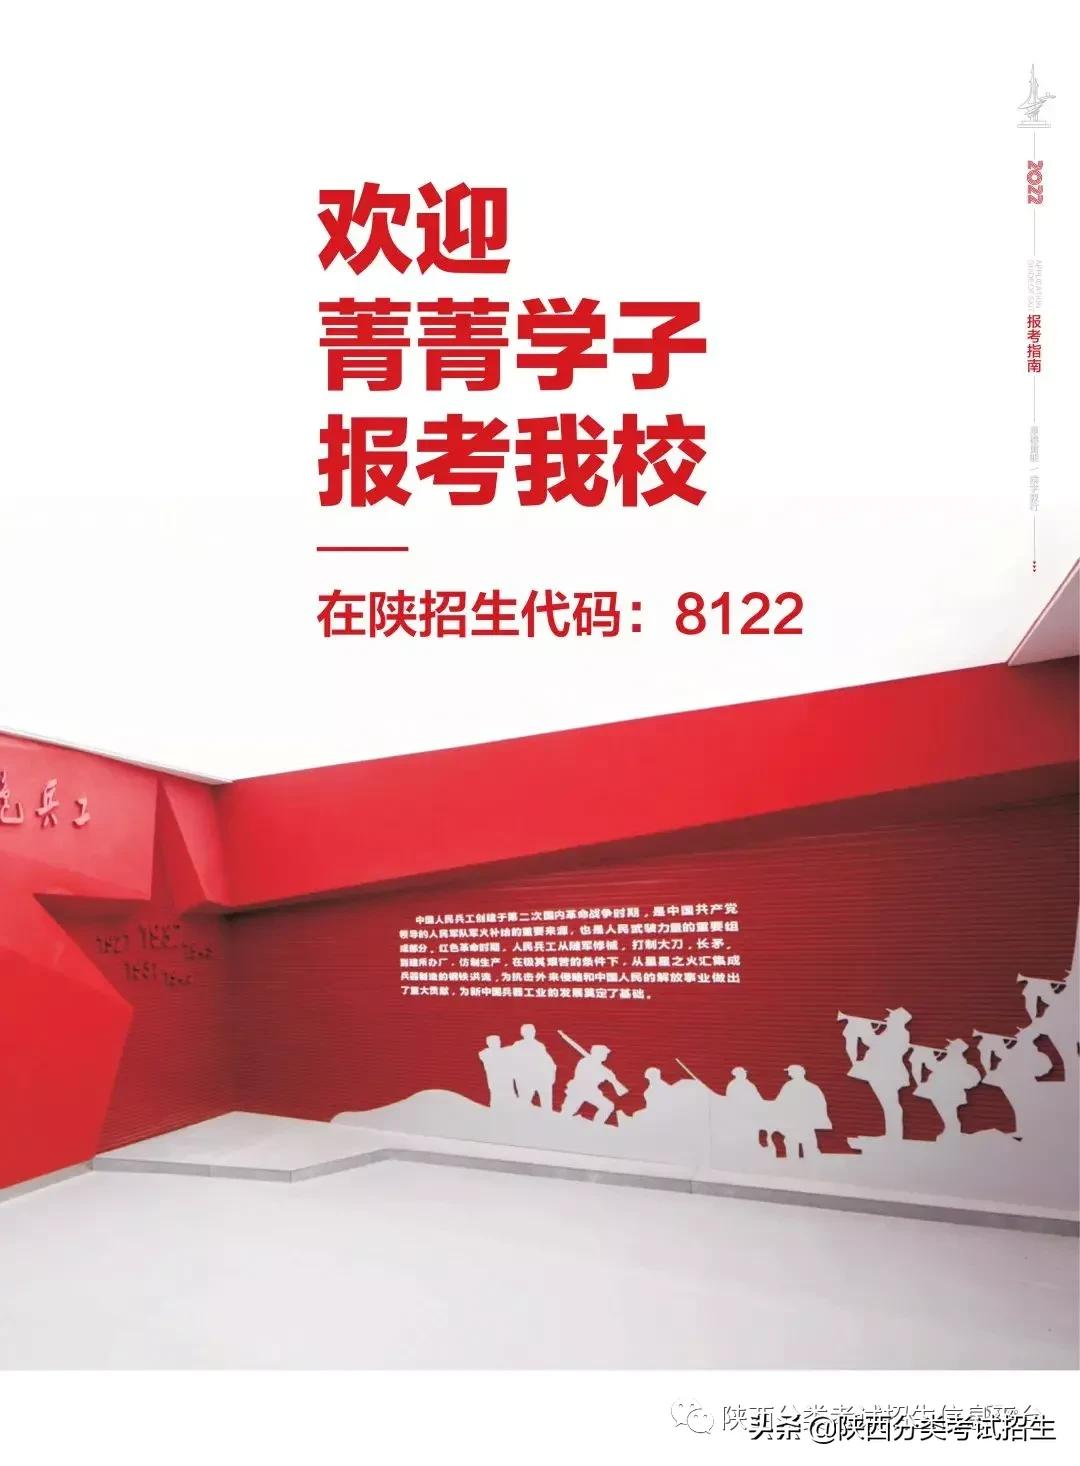 「招生简章」陕西国防工业职业技术学院2022年分类考试招生简章